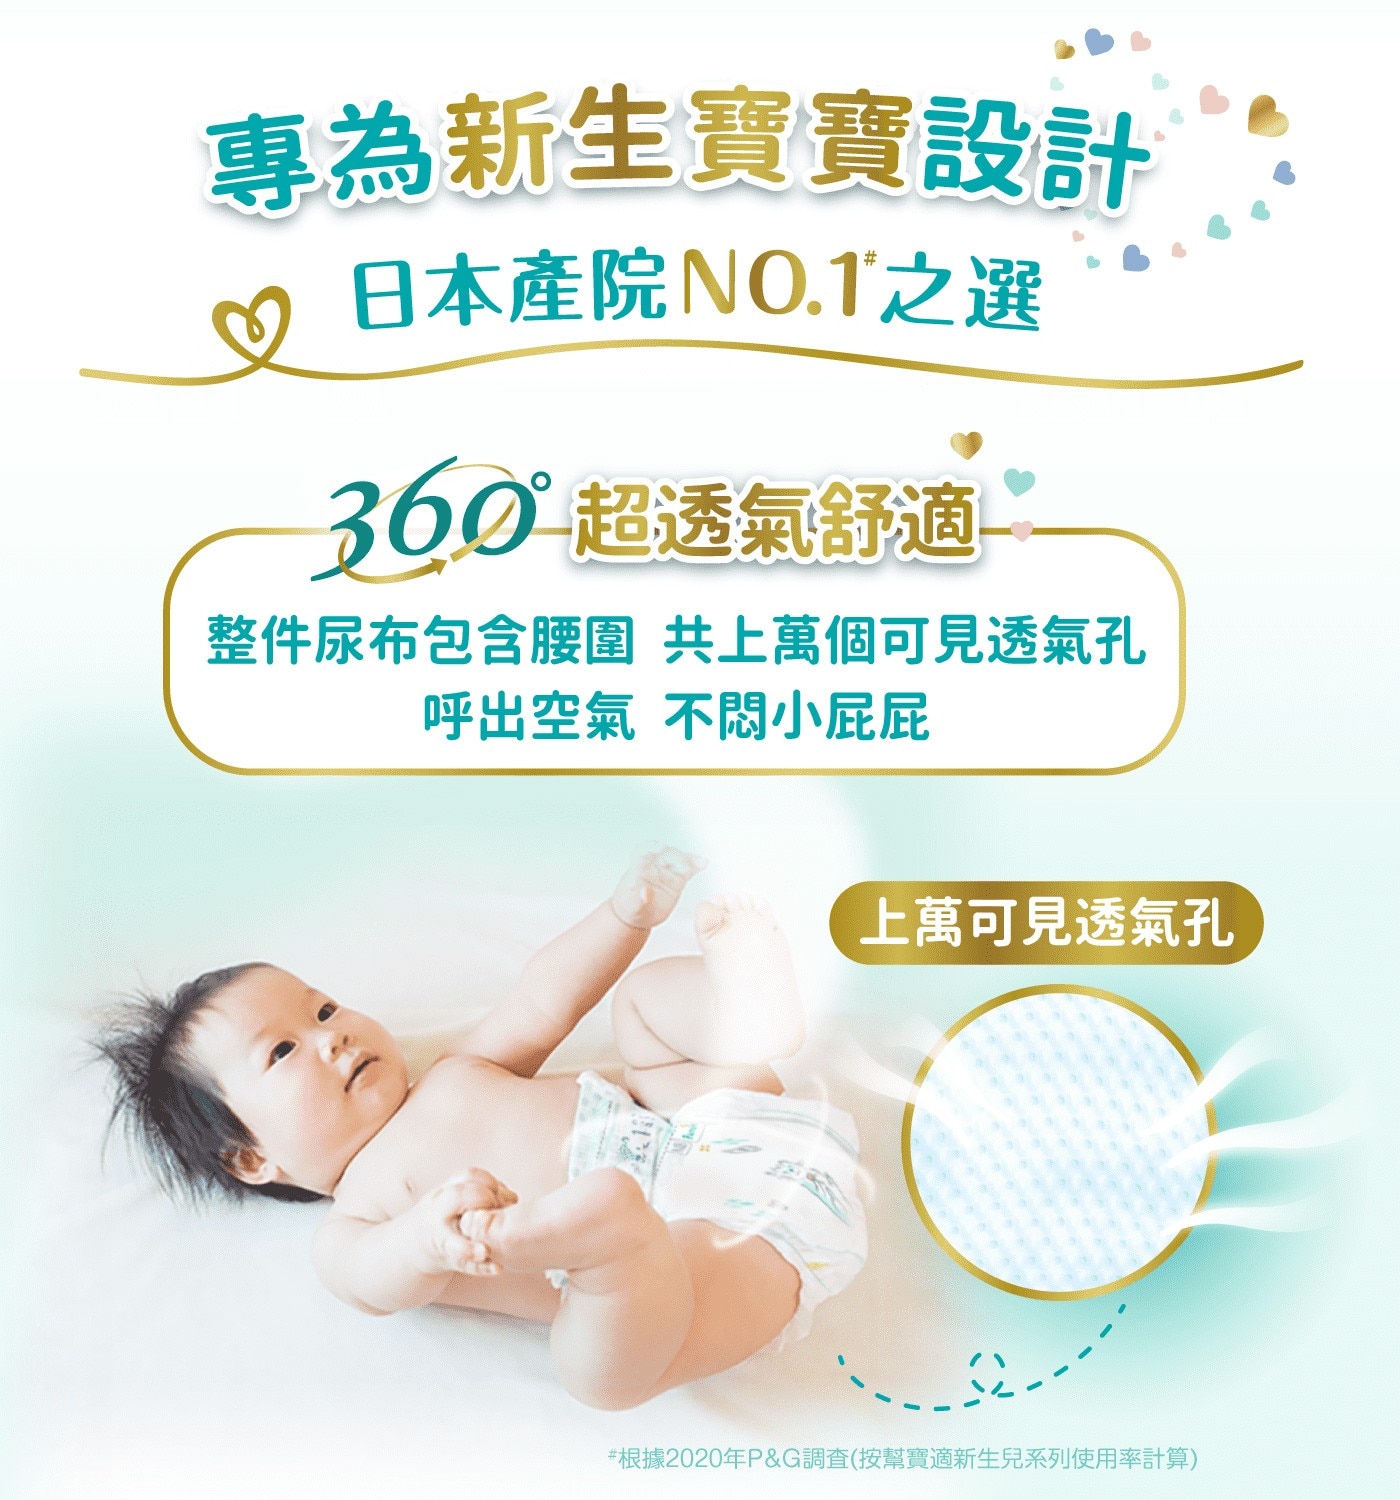 幫寶適一級幫M號專為新生寶寶設計日本產院第一首選整件尿布包含腰圍共上萬個可見透氣孔呼出空氣不悶小屁屁